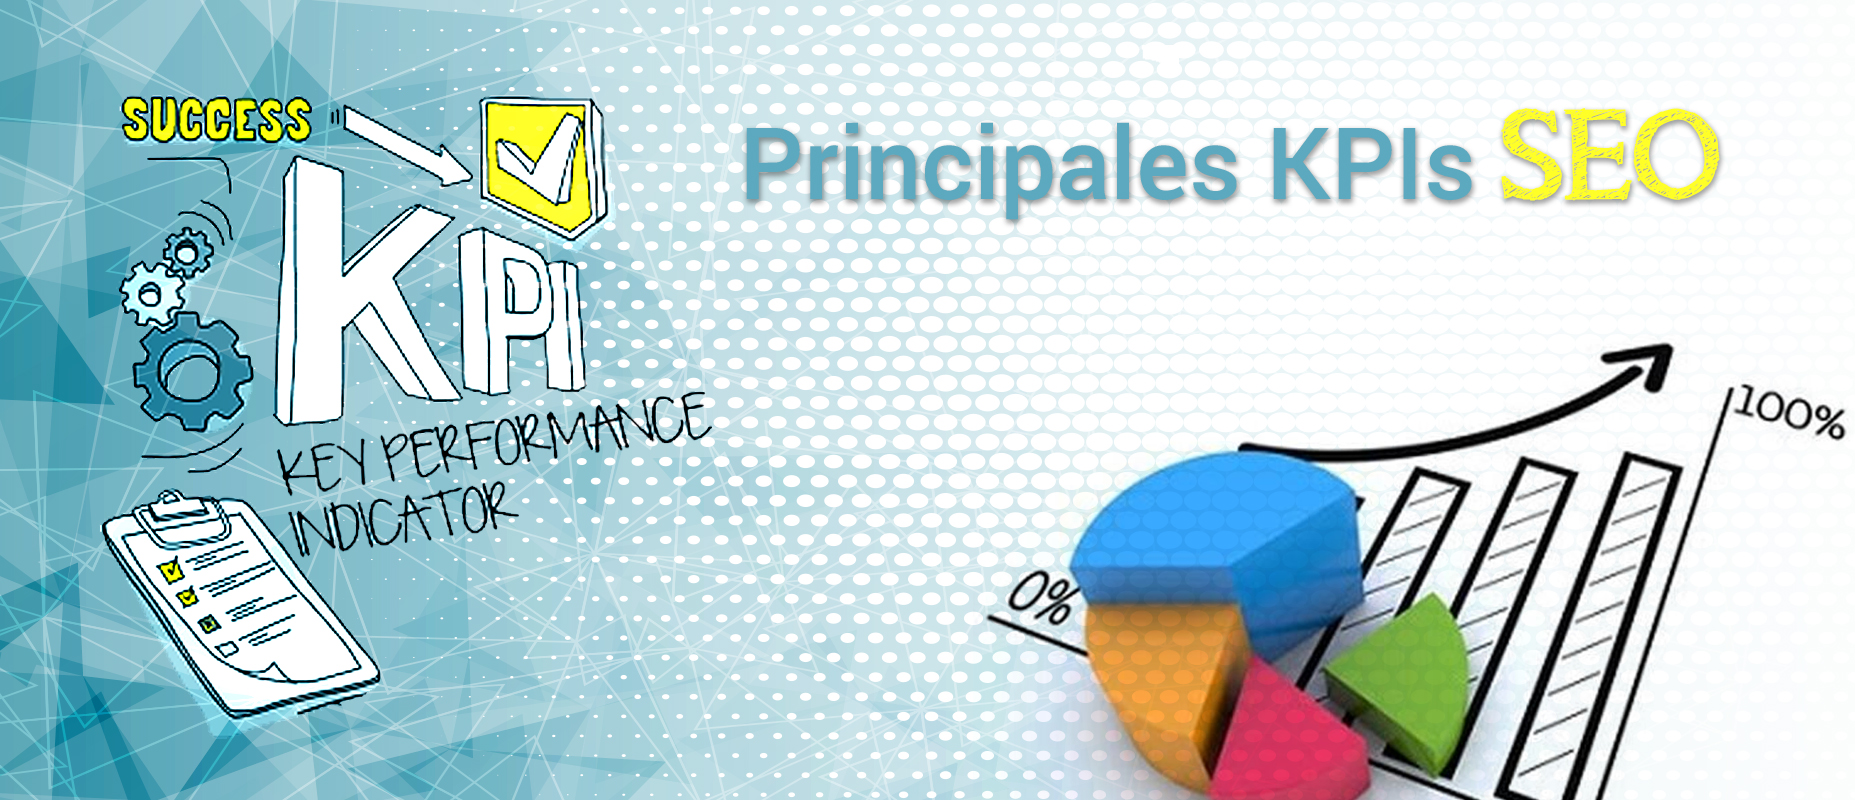 Principales KPIS SEO para el análisis SEO